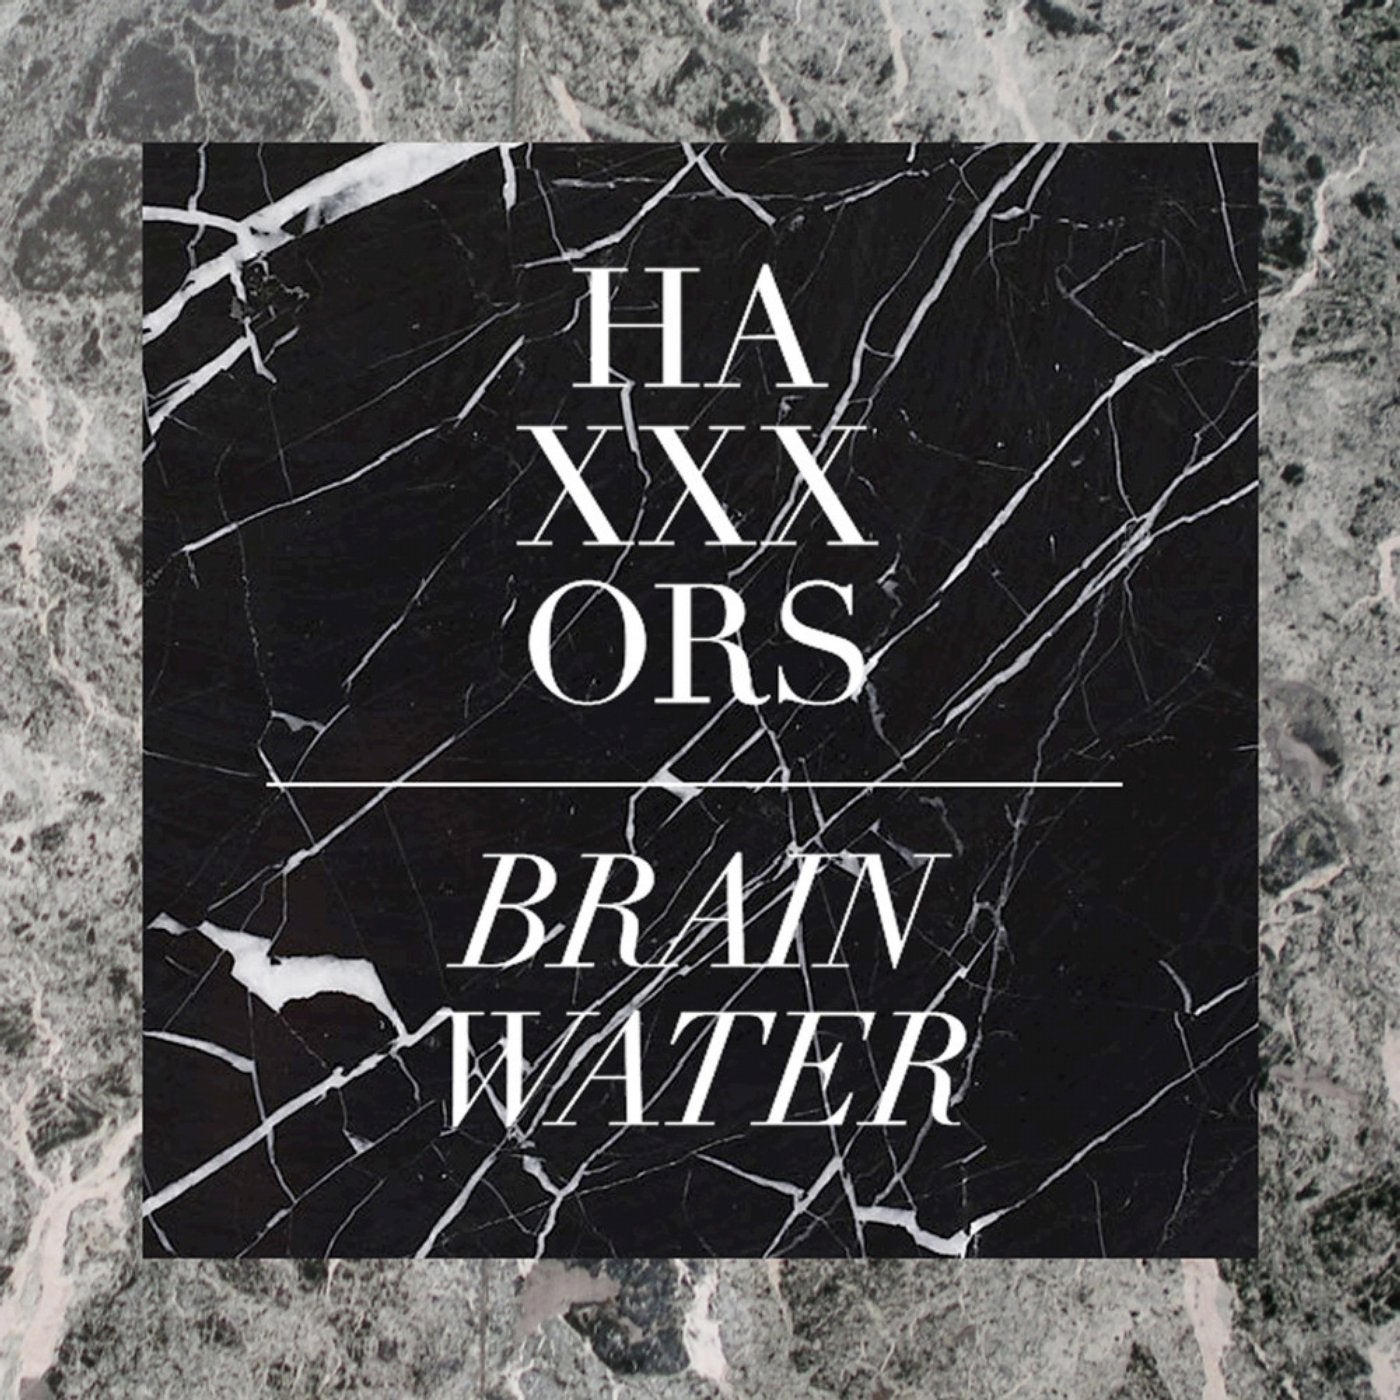 Brain Water